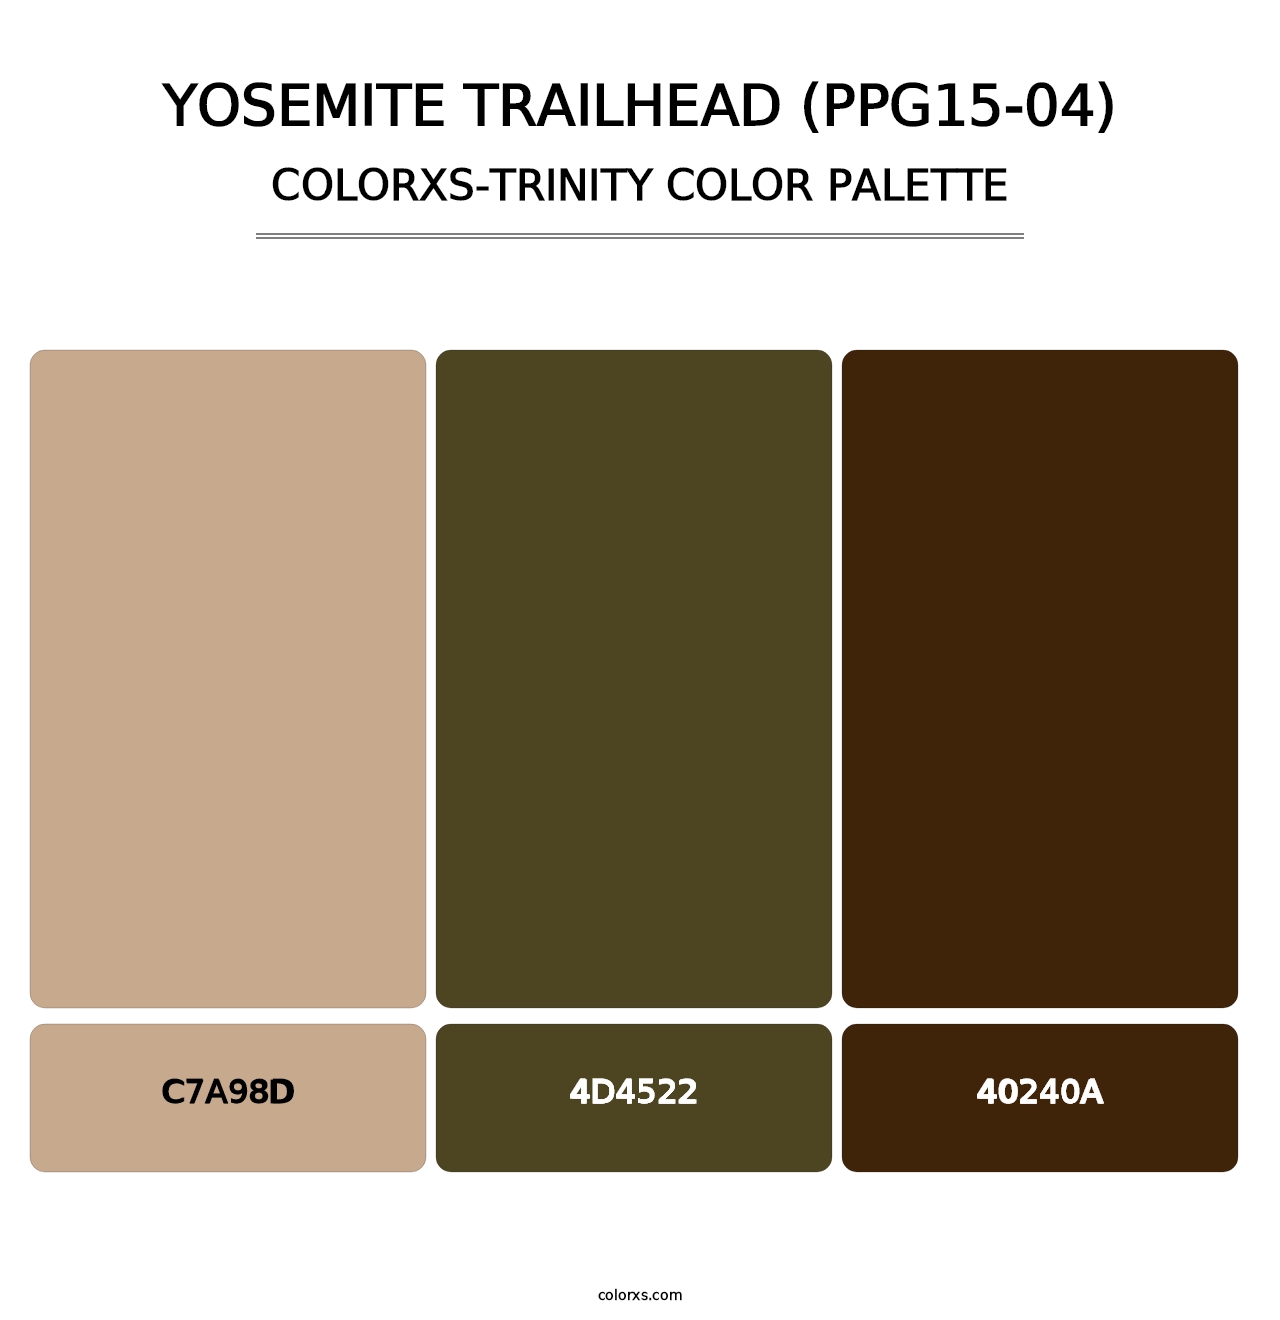 Yosemite Trailhead (PPG15-04) - Colorxs Trinity Palette